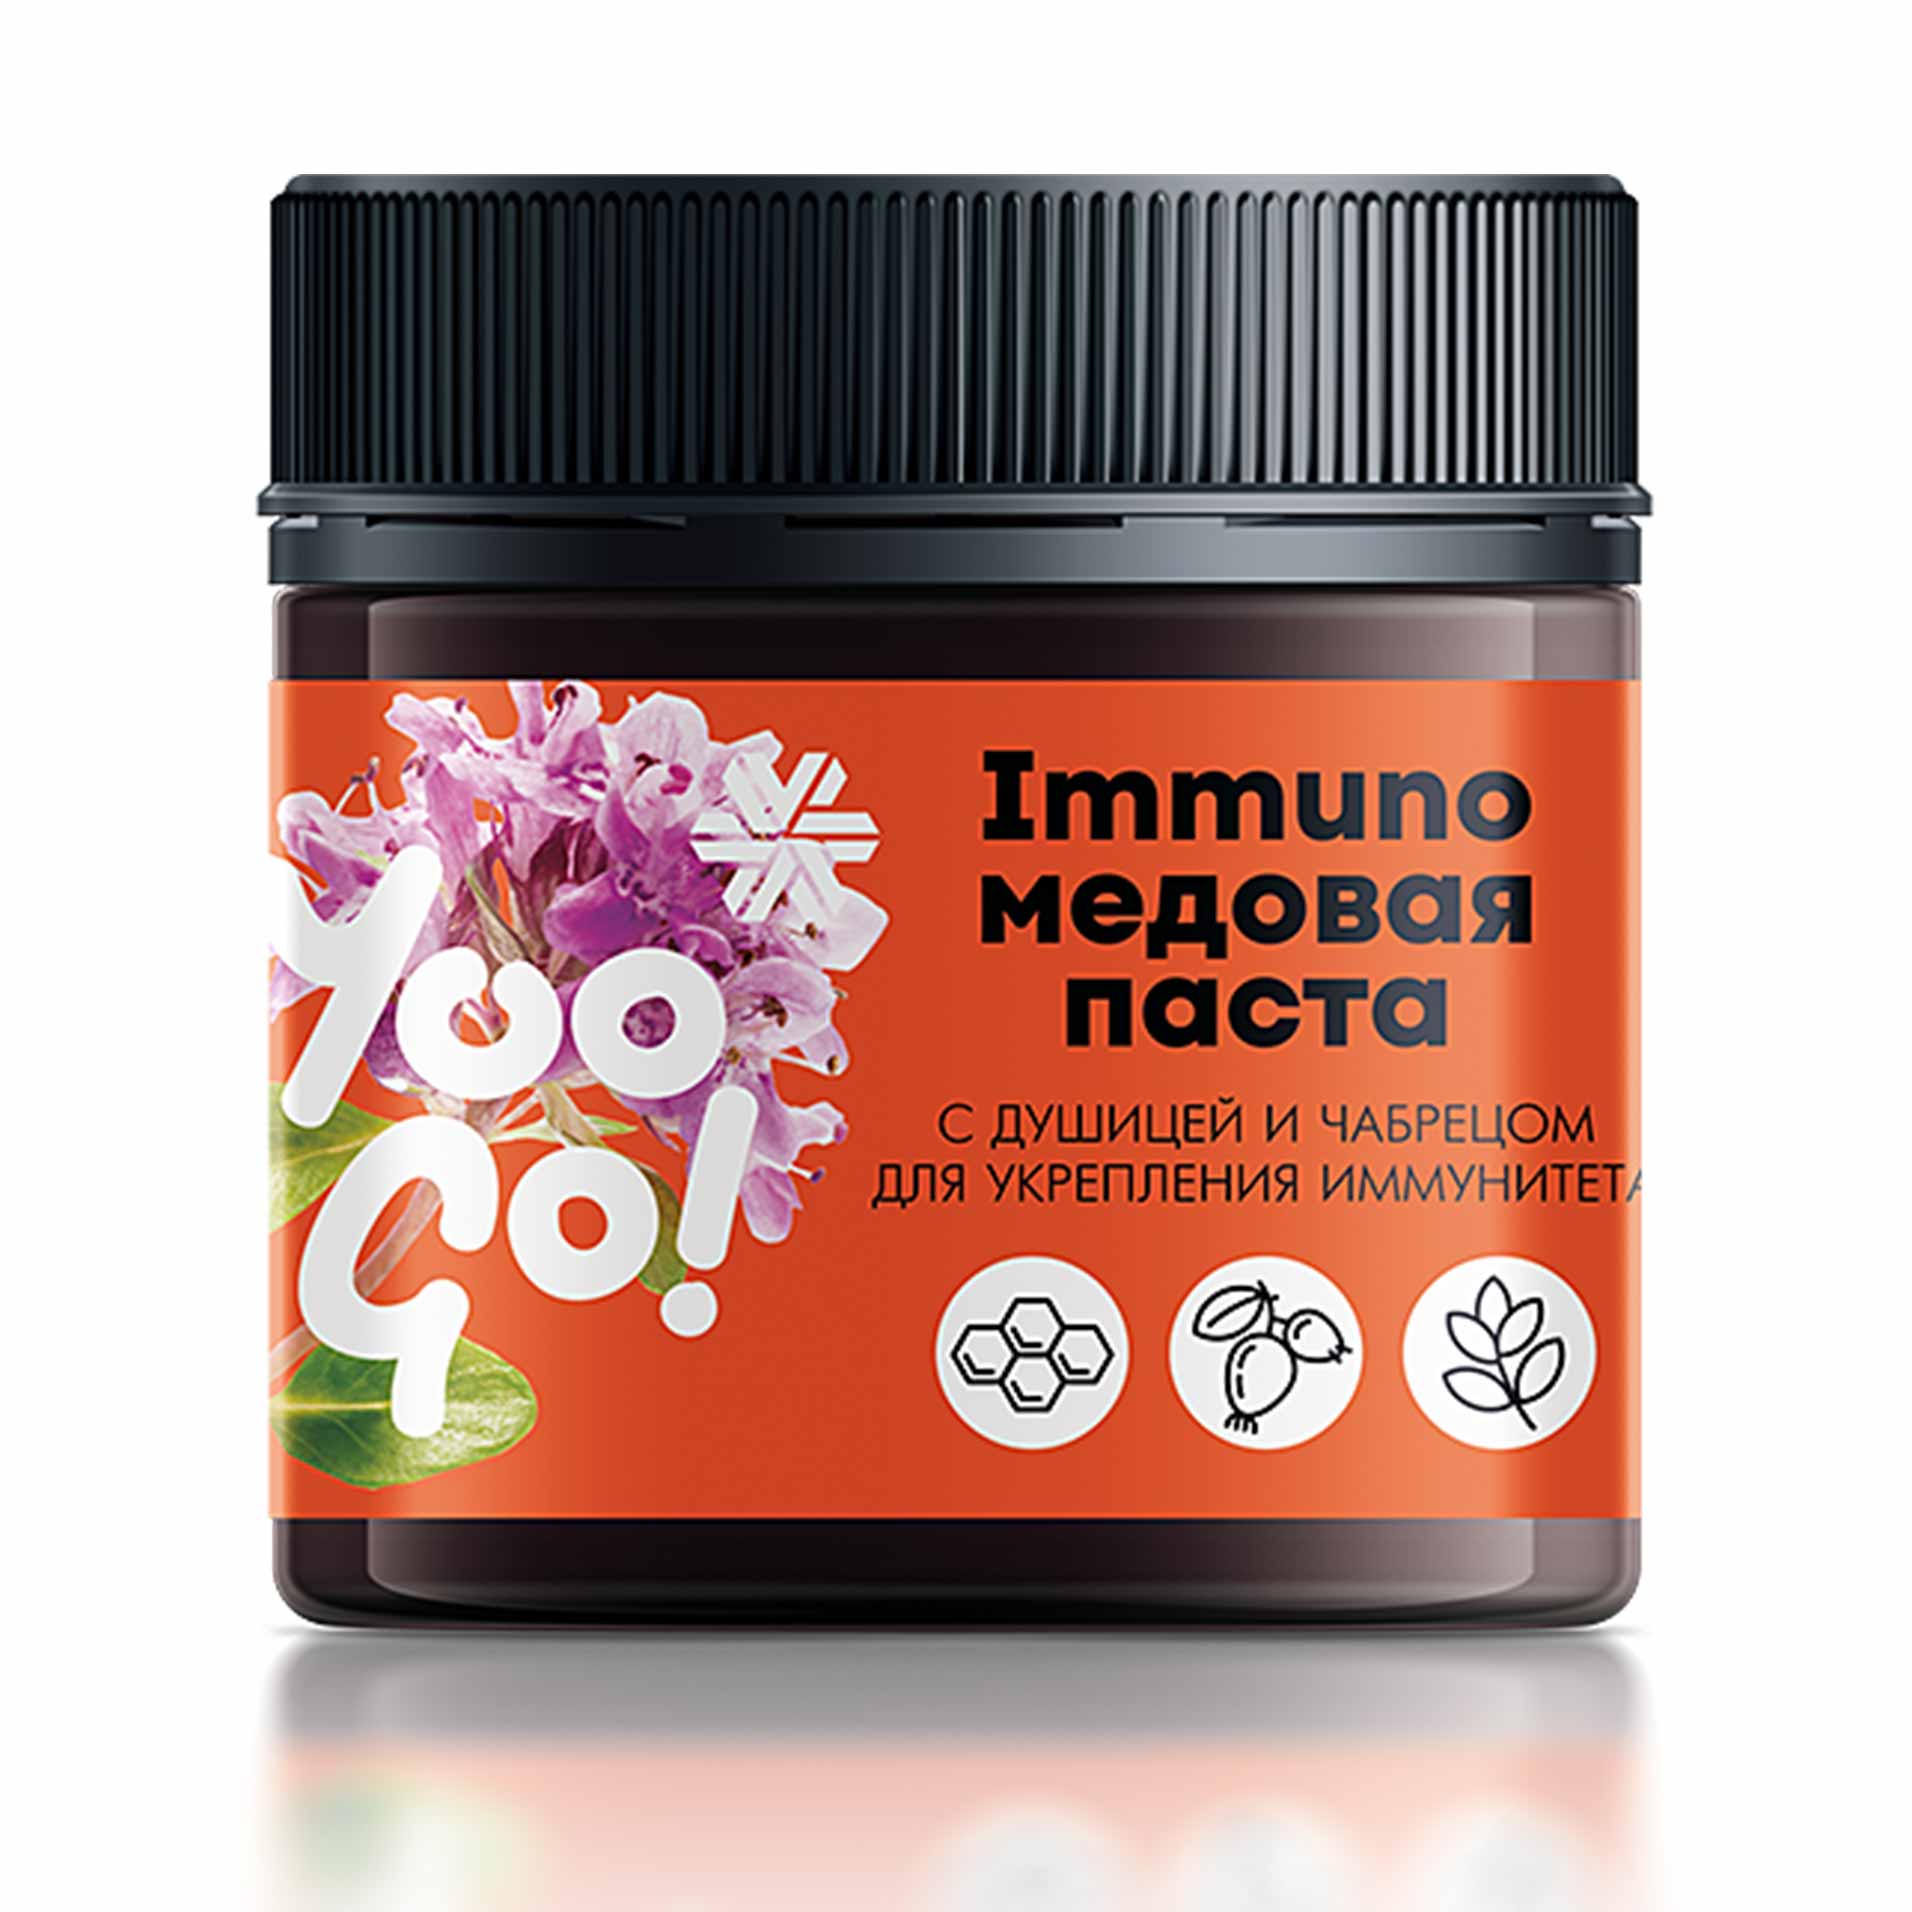  Immuno, медовая паста с душицей и чабрецом для укрепления иммунитета